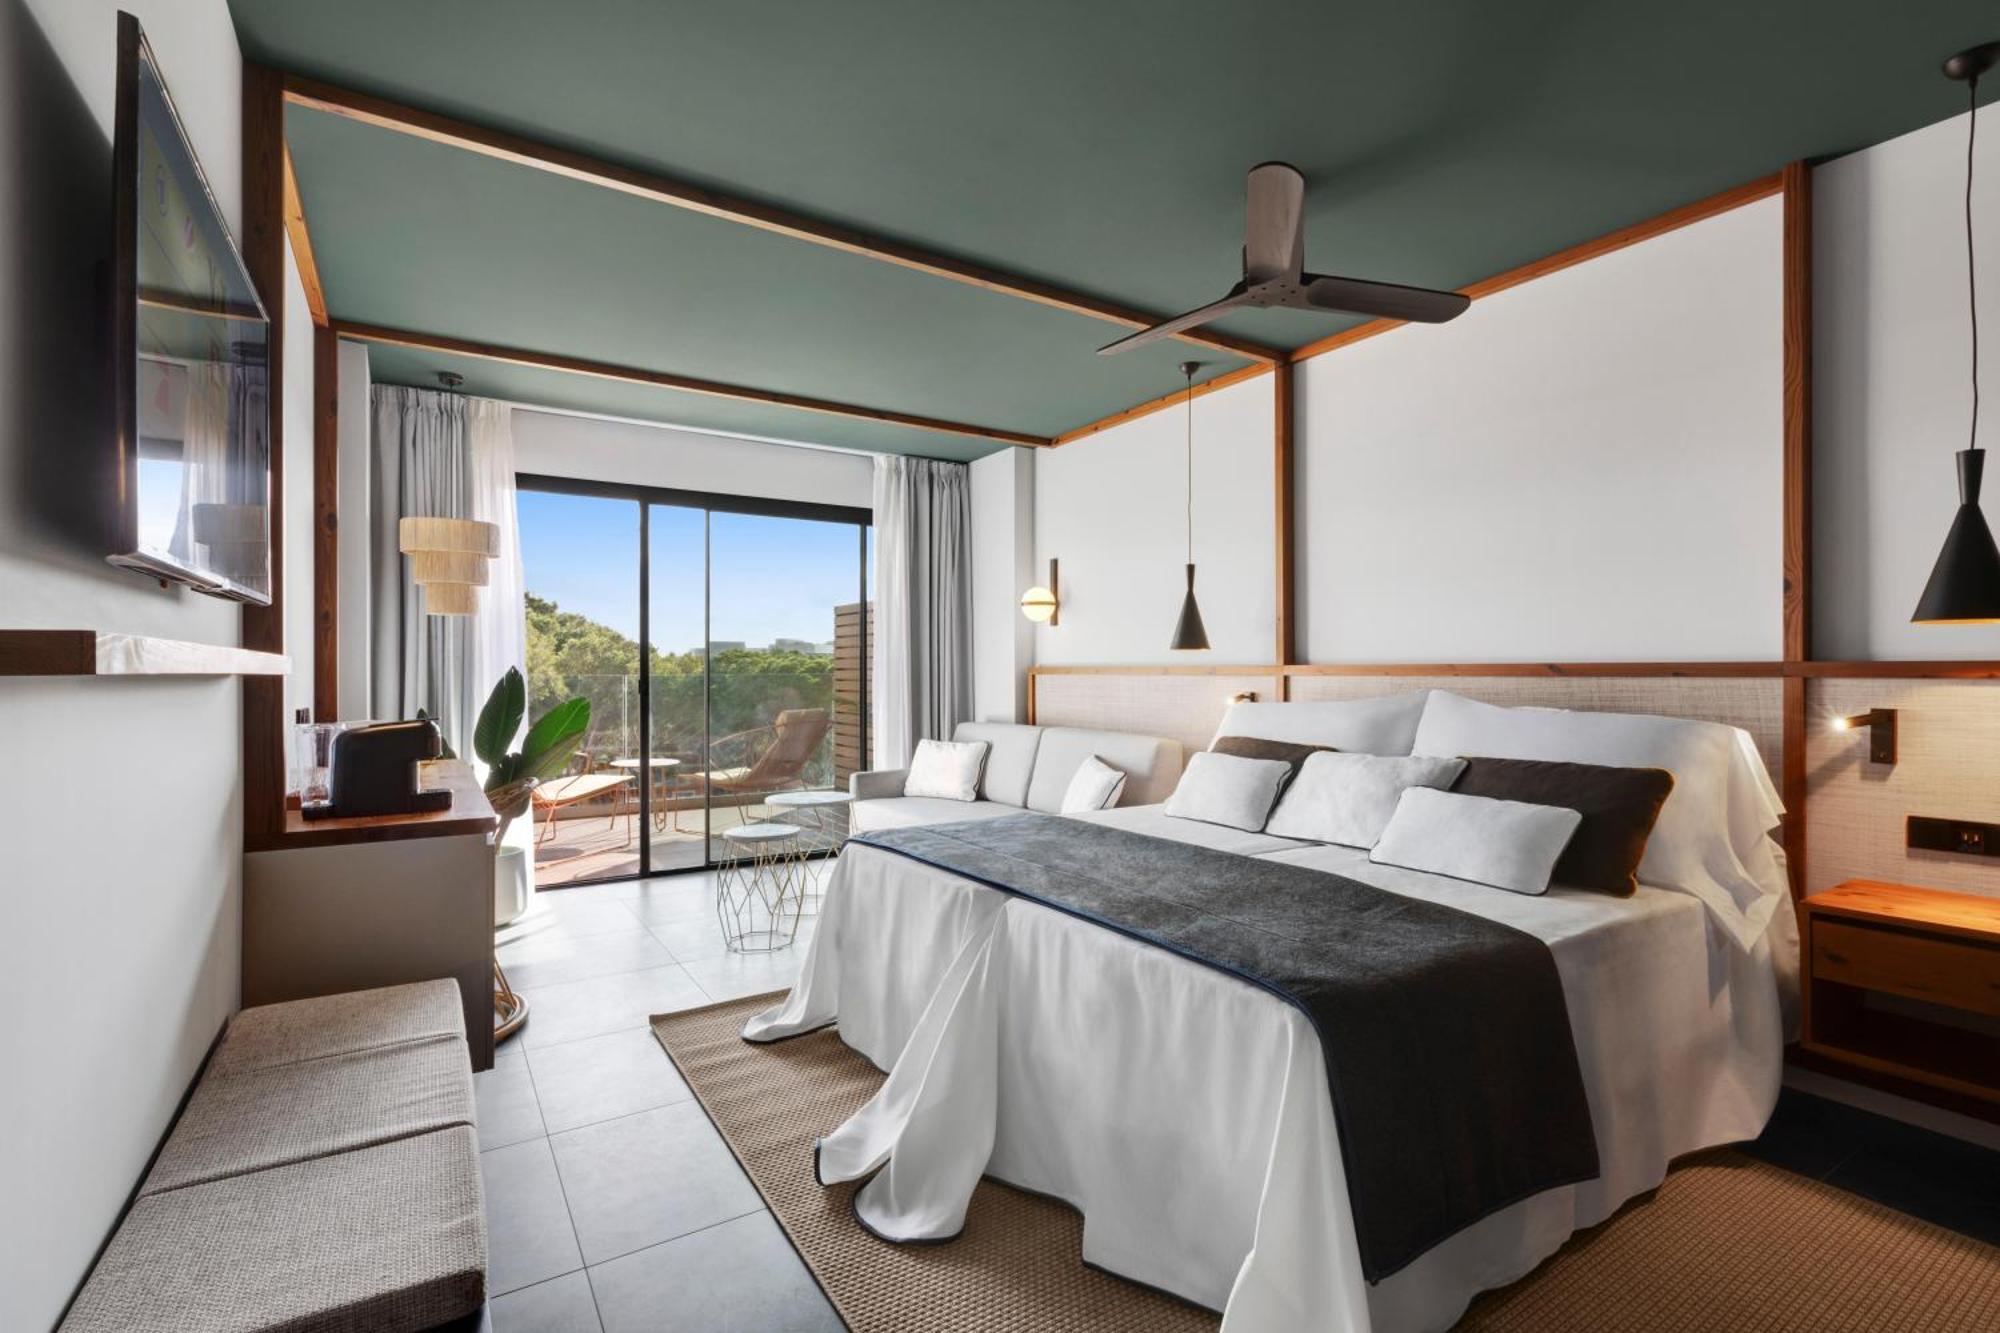 Aubamar Suites & Spa Playa de Palma  Exteriör bild